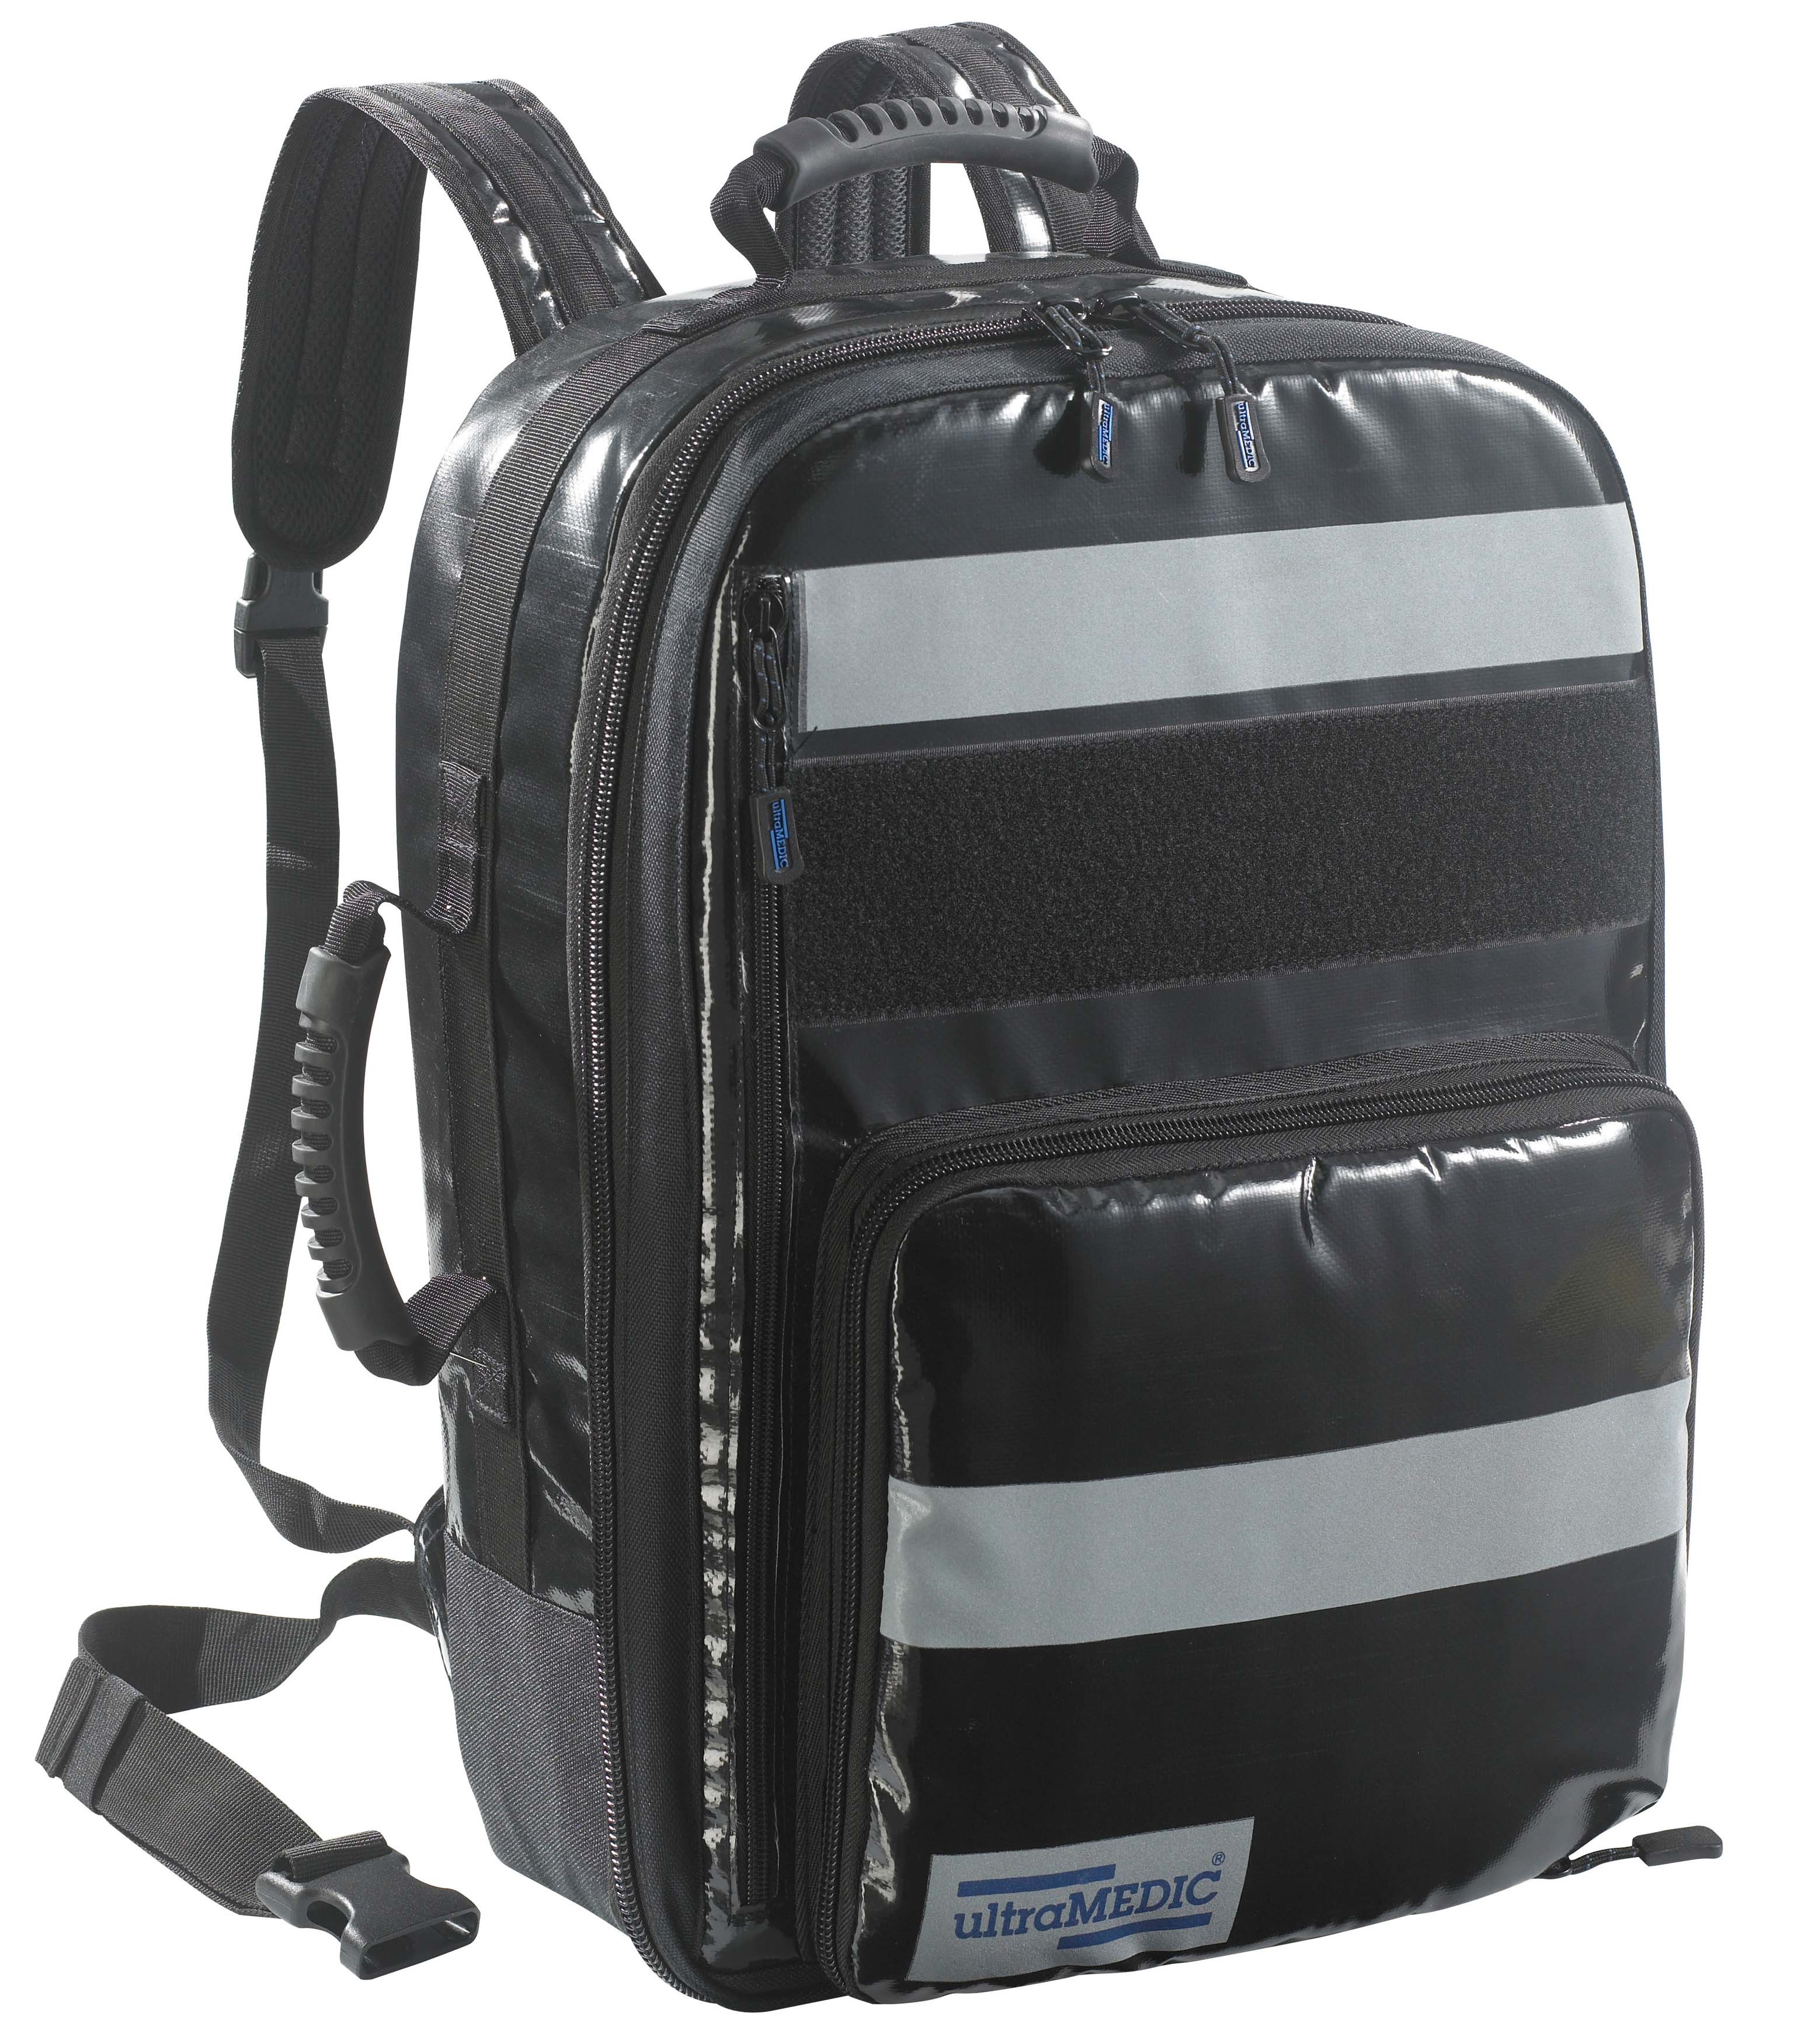 Notfall-Sanitätsrucksack RESCUE I (leer) ohne Füllung. Farbe schwarz. Fassungsvolumen ca. 40 Ltr., mit 5 farblich sortierten Modul-Taschen. Maße 520x380x220 mm, Gewicht ca. 4,00 kg